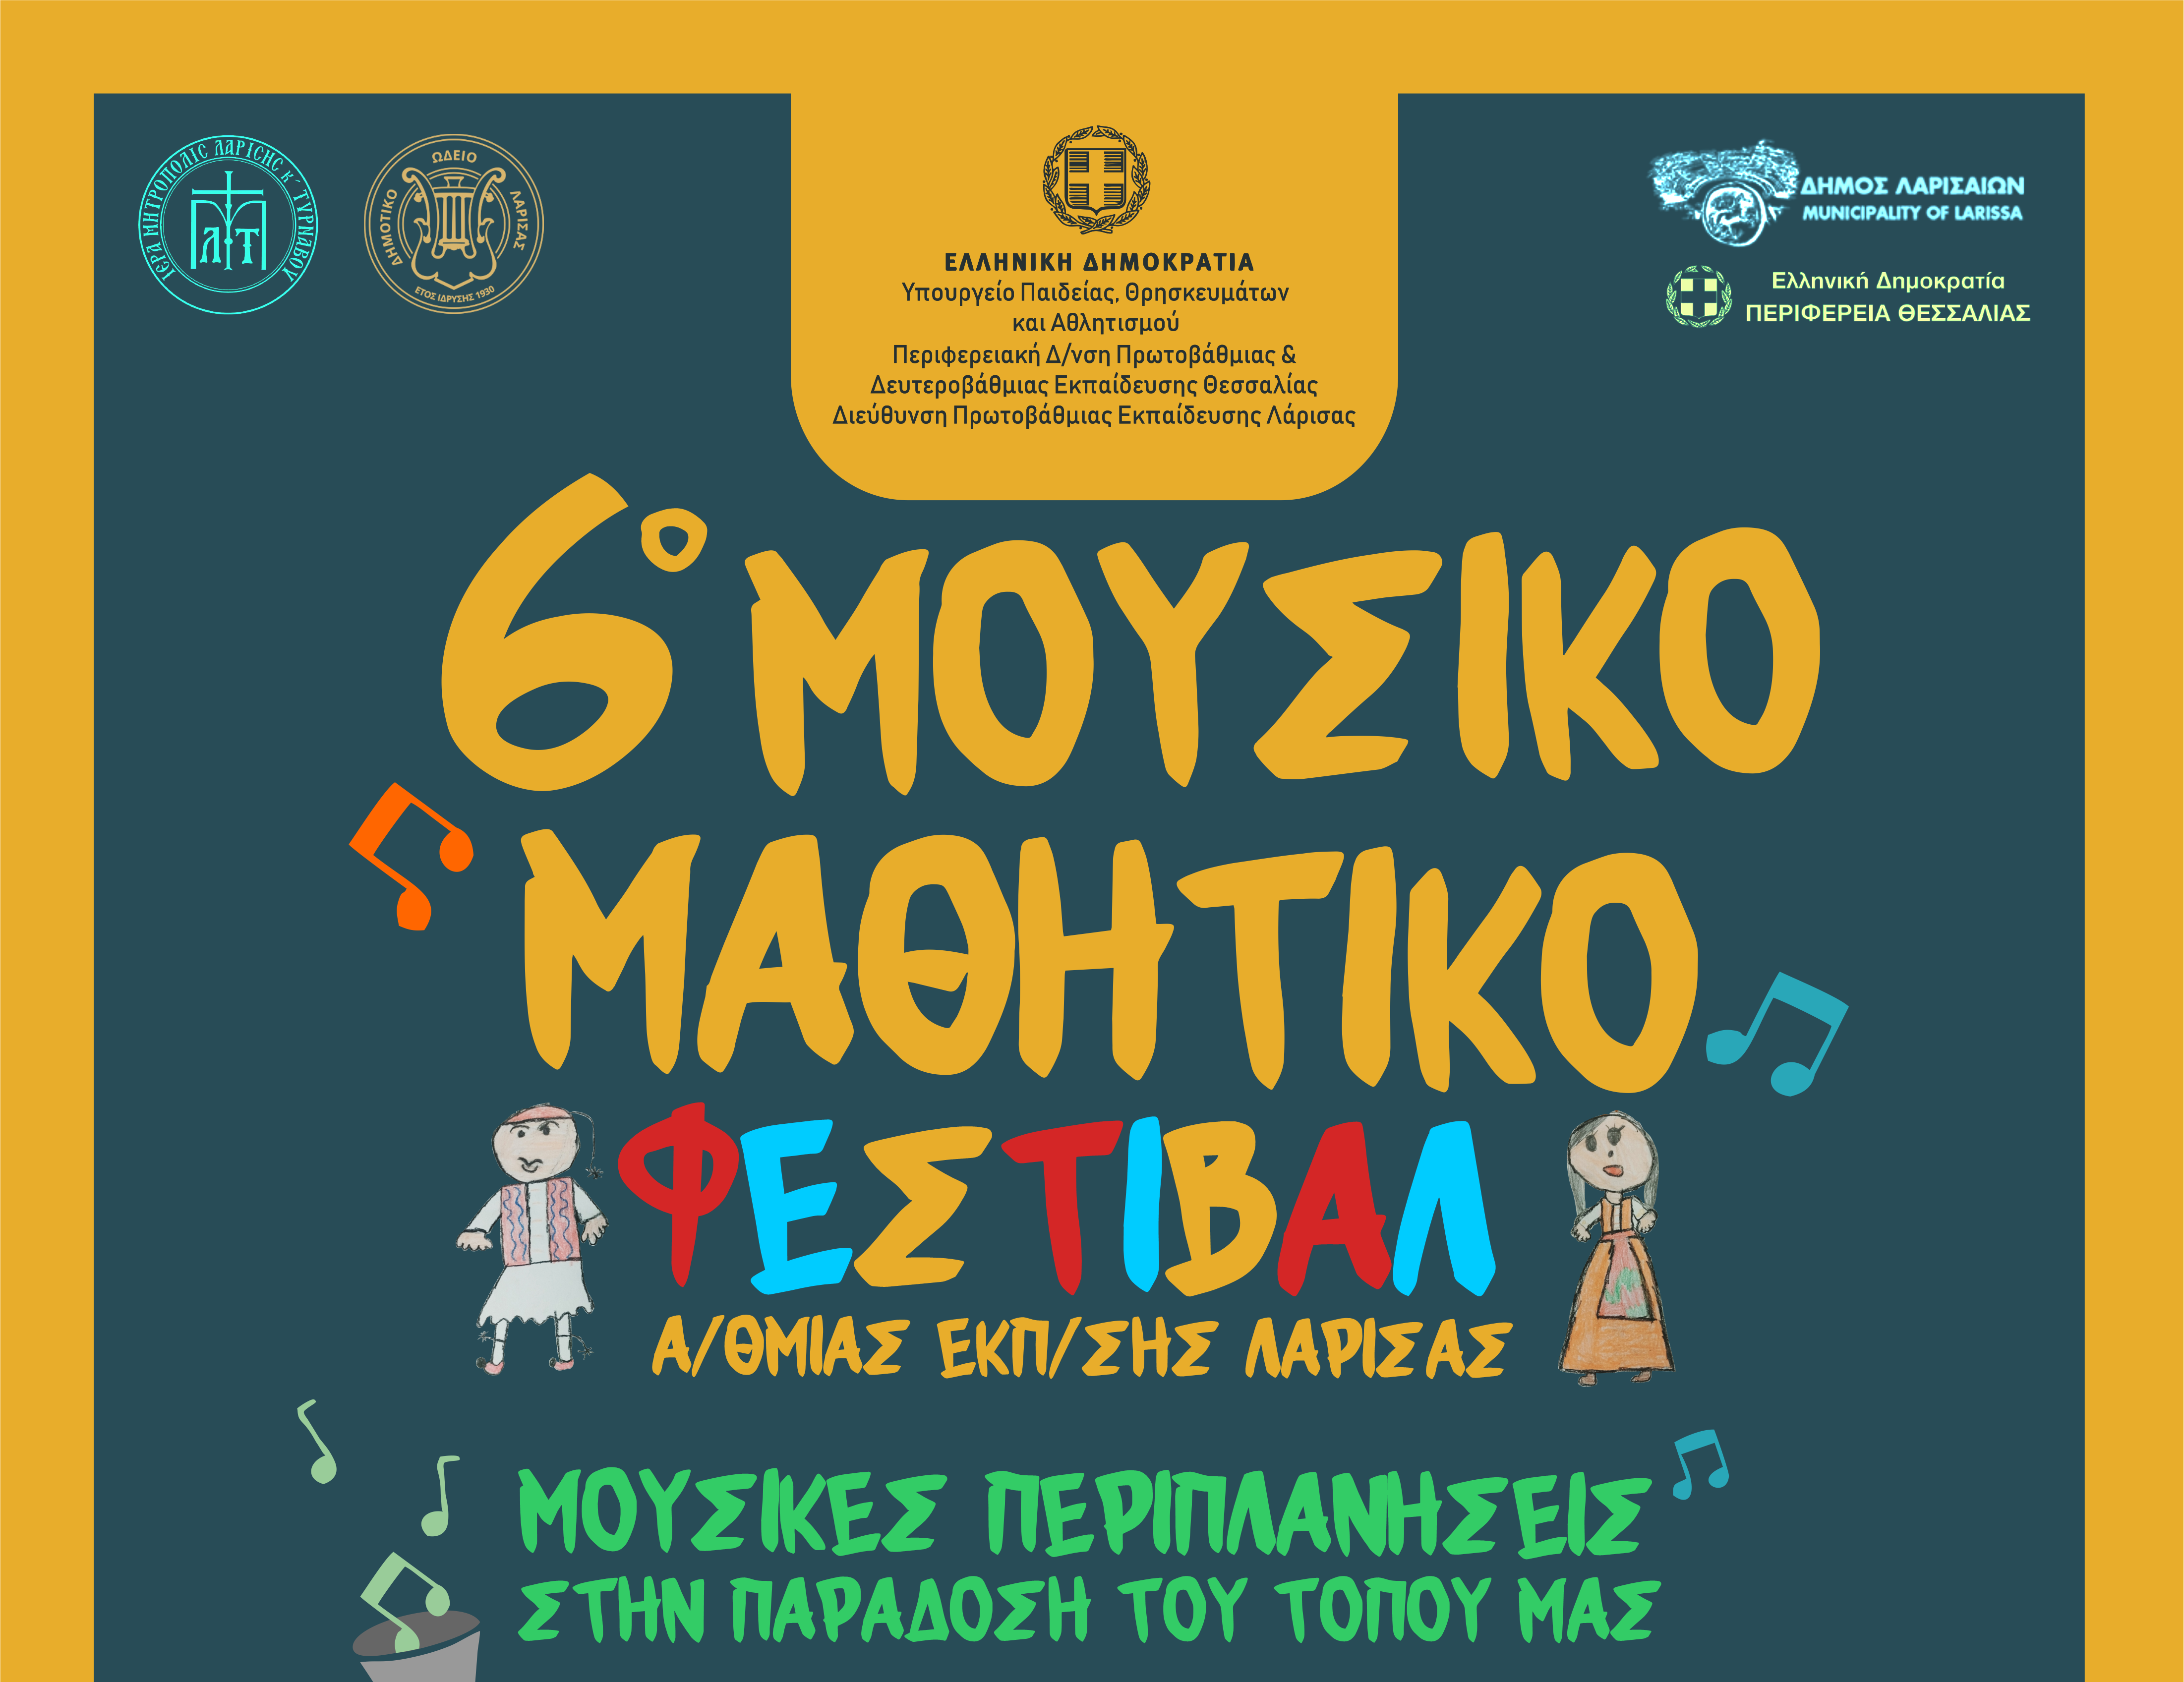 Ξεκινά το 6ο Μουσικό Μαθητικό Φεστιβάλ για την ελληνική παράδοση